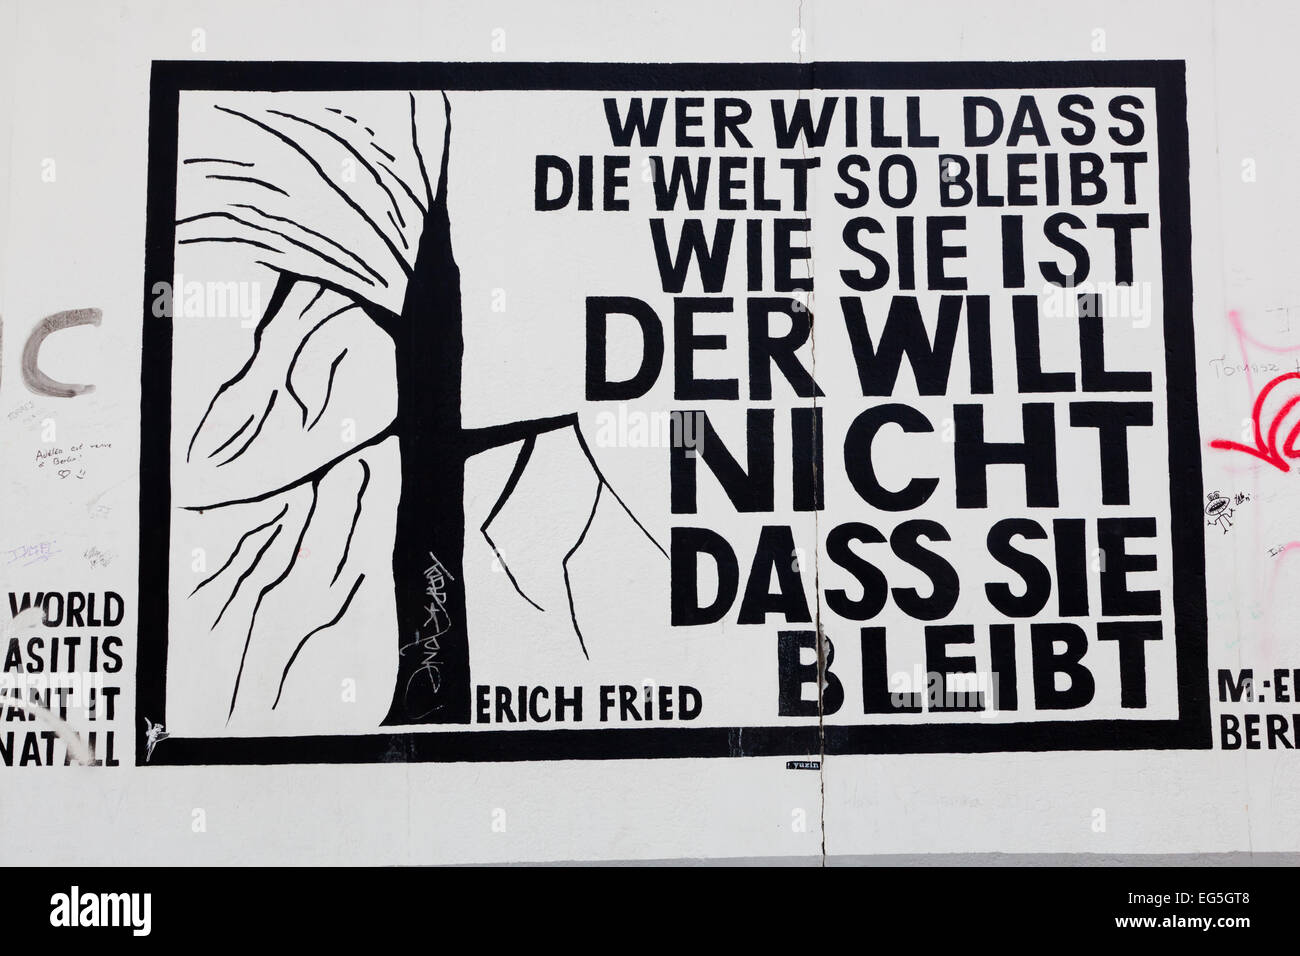 BERLIN, Juli 26: Graffiti an der East Side Gallery am 26. Juli 2013 in Berlin, Deutschland. Es dokumentiert eine Zeit des Wandels und der Hoffnung. Stockfoto